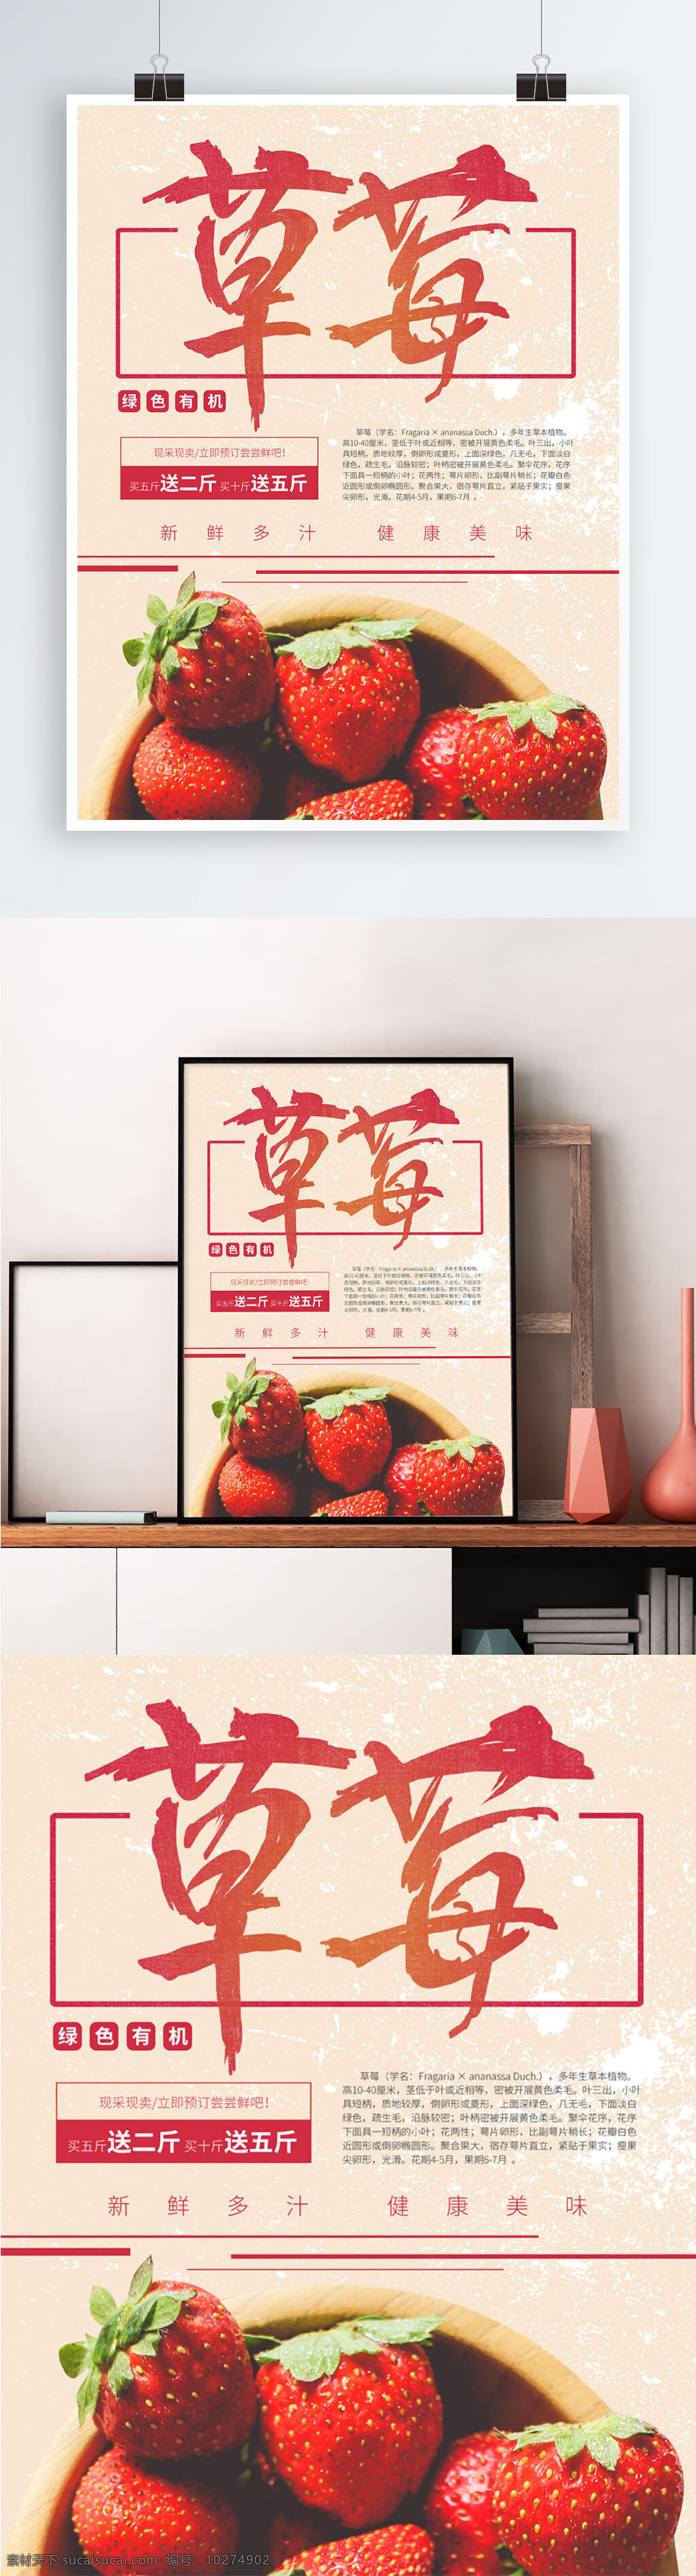 简约 草莓 新鲜 水果 模板 水果店海报 水果海报 鲜果促销 新鲜水果